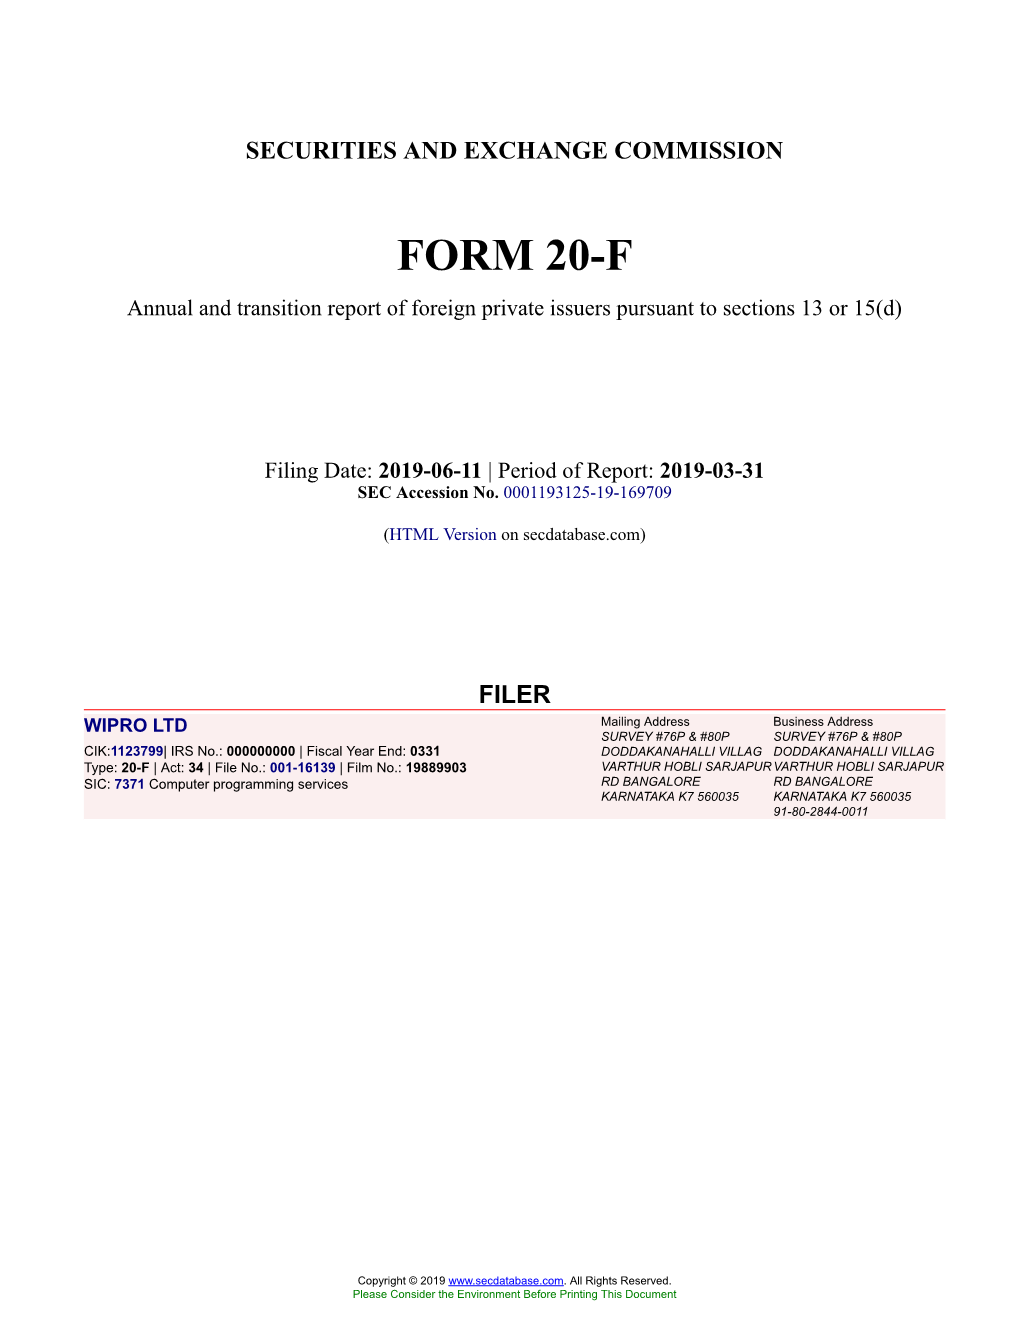 WIPRO LTD Form 20-F Filed 2019-06-11